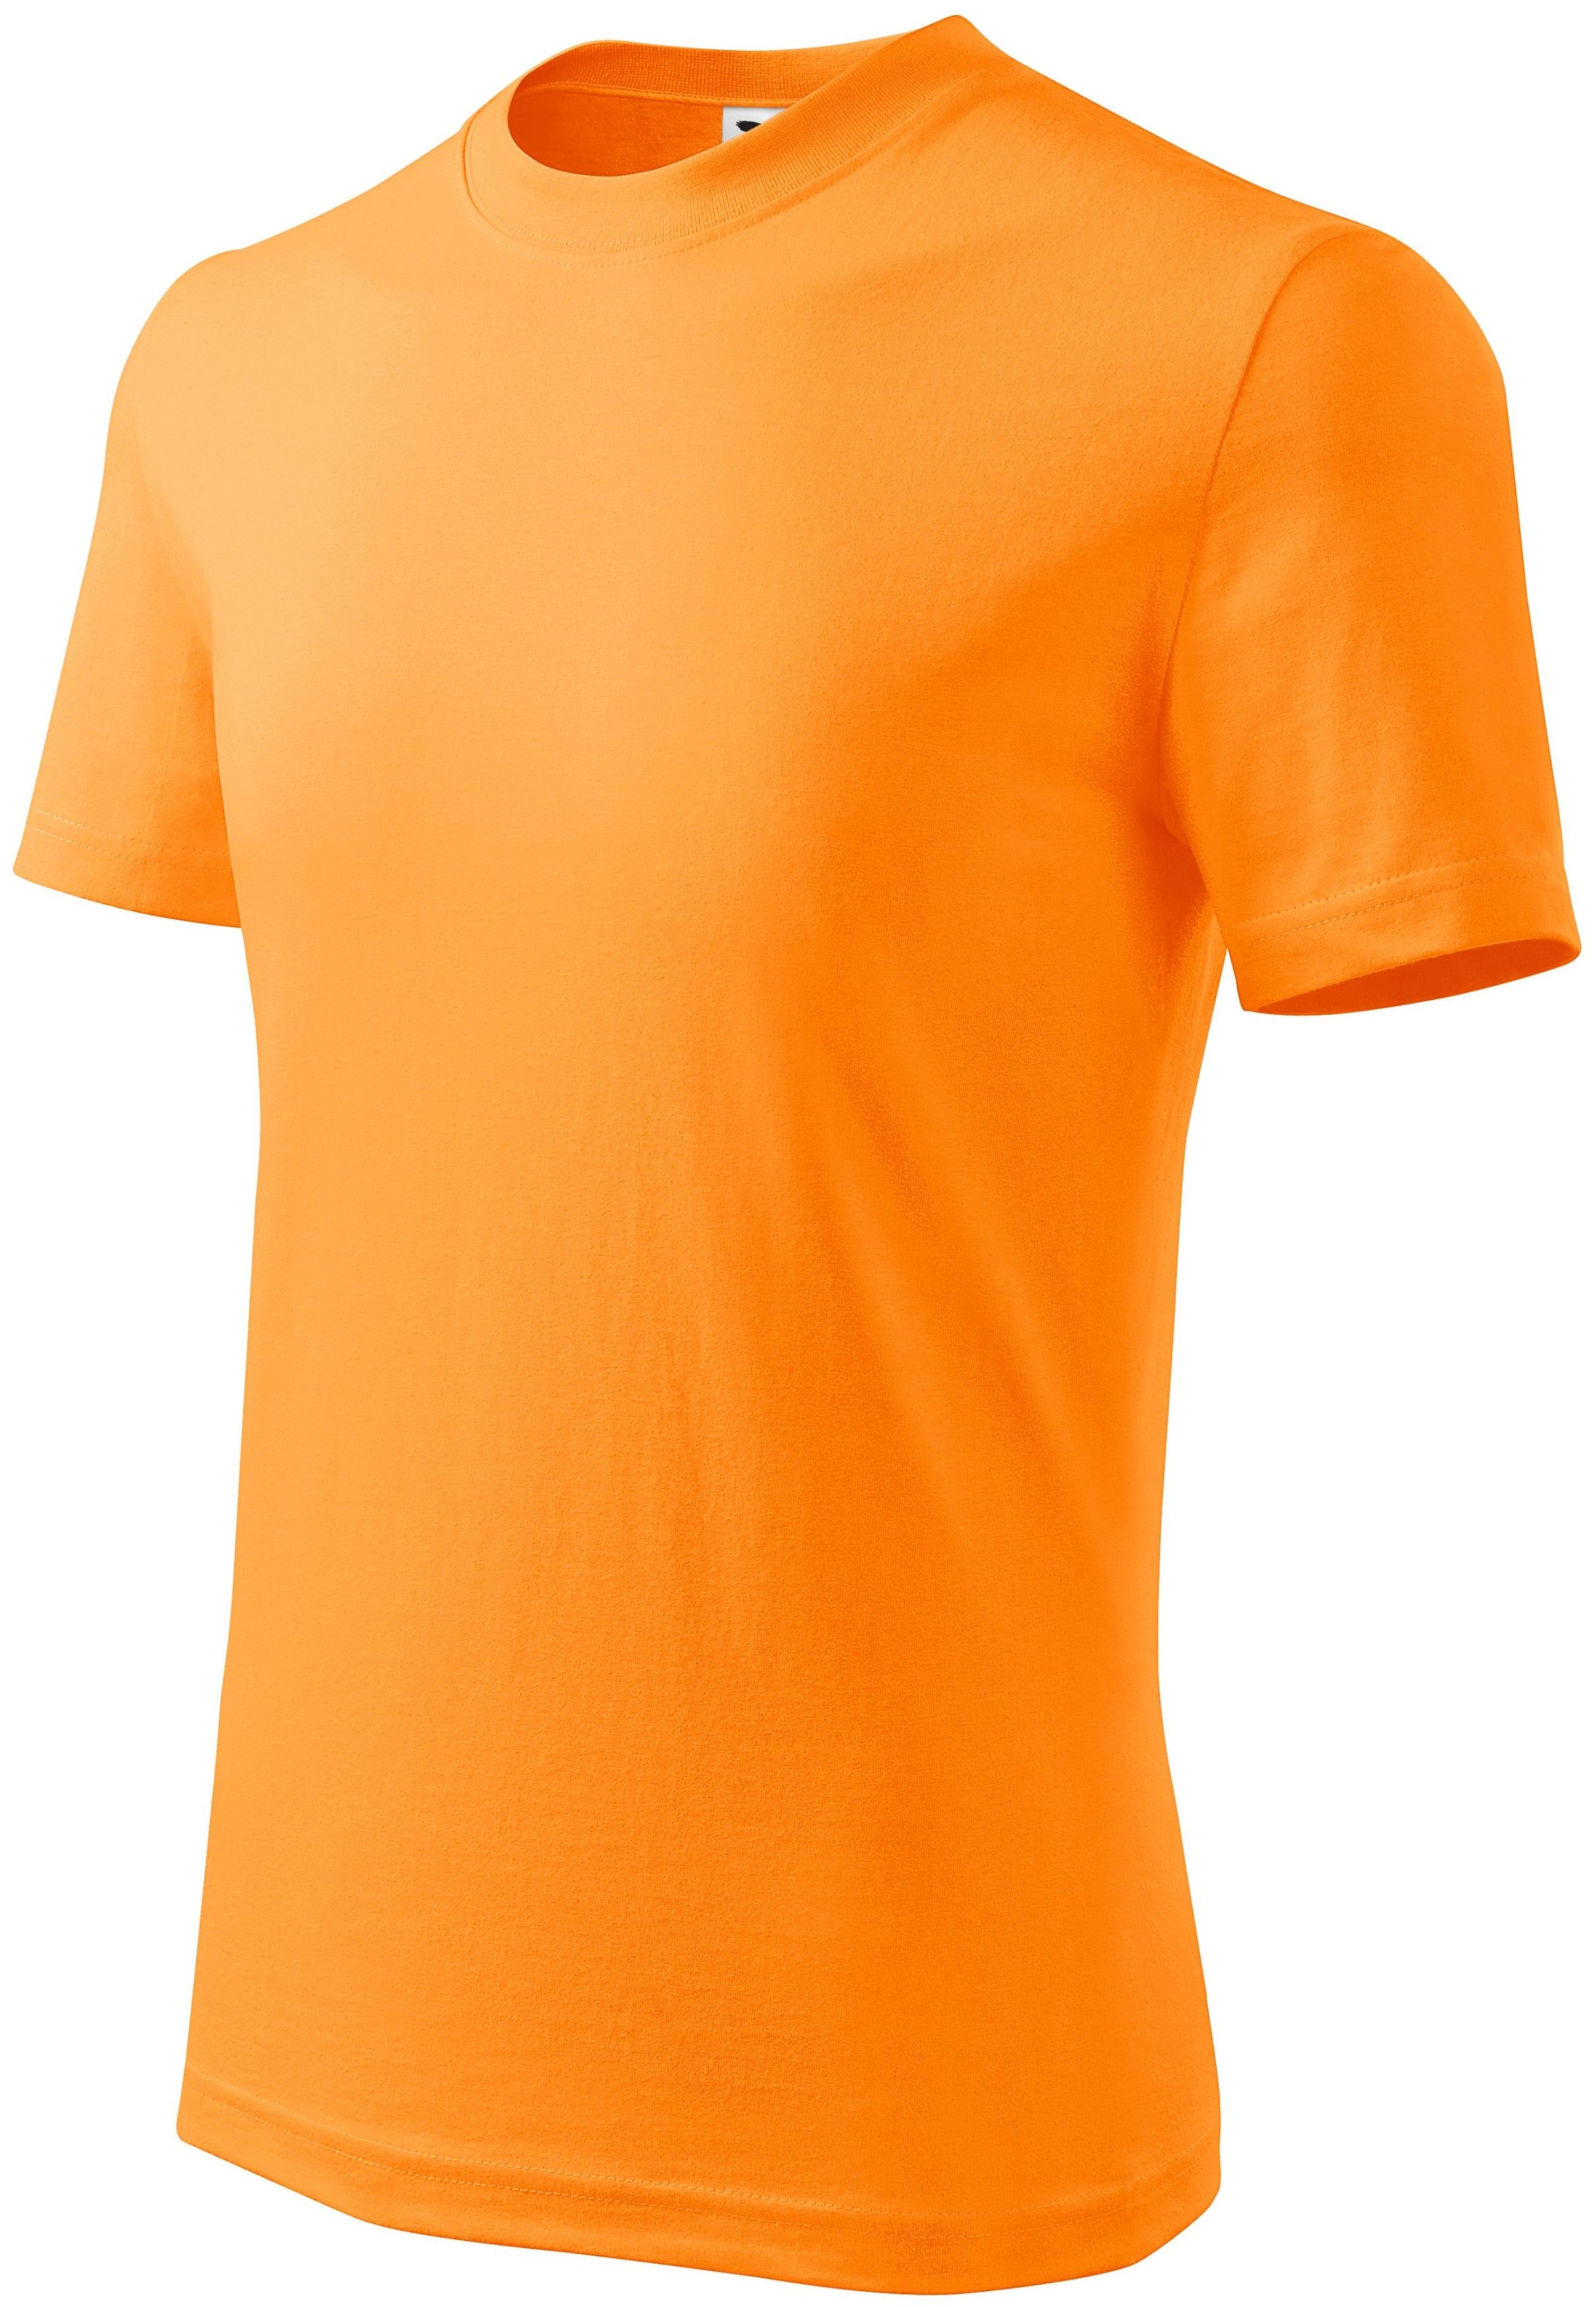 Majica, KR, 145 g, dječja, orange, XS